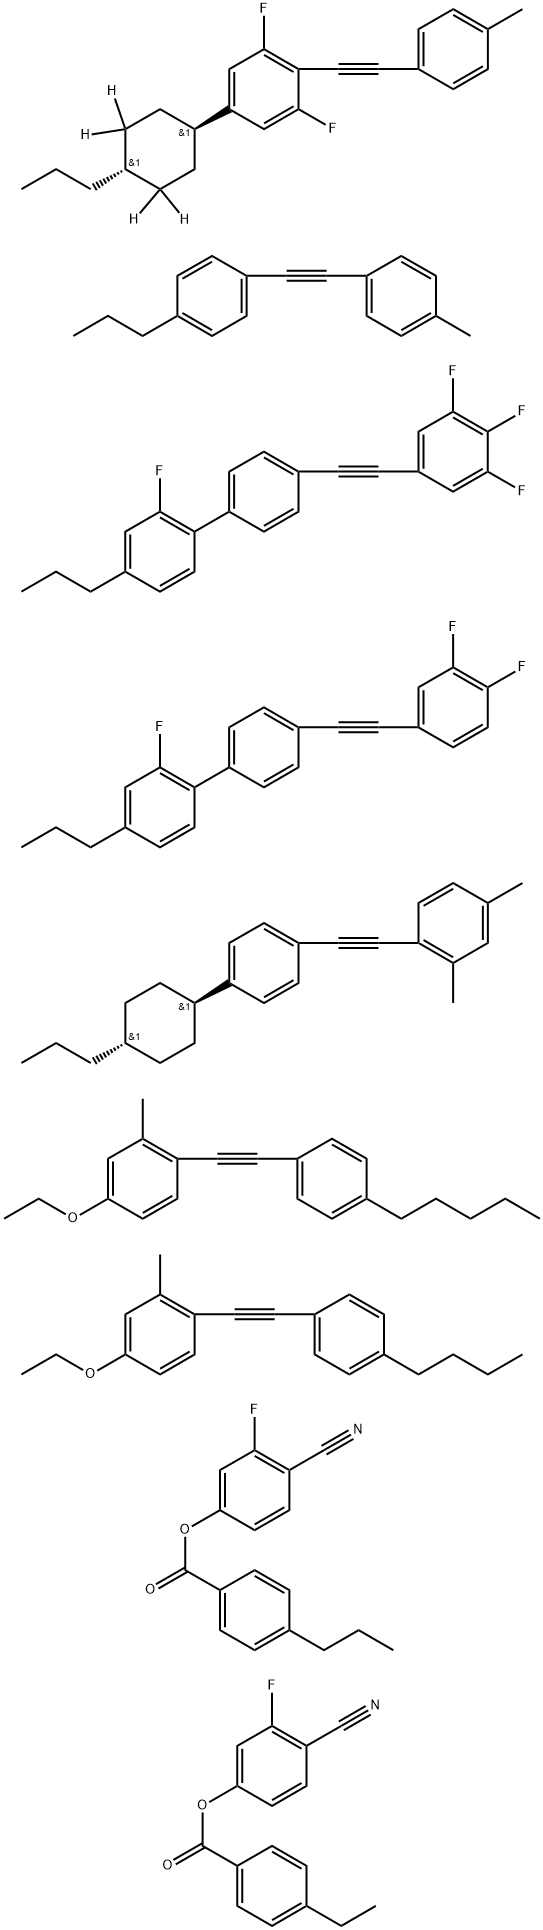 Benzoic acid, 4-ethyl-, 4-cyano-3-fluorophenyl ester, mixt. with 1-[(4-butylphenyl)ethynyl]-4-ethoxy-2-methylbenzene, 4-cyano-3-fluorophenyl 4-propylbenzoate, 1,3-difluoro-2-[(4-methylphenyl)ethynyl]-5-(trans-4-propylcyclohexyl-3,3,5,5-d4)benzene, 4′-[(3,4-difluorophenyl)ethynyl]-2-fluoro-4-propyl-1,1′-biphenyl, 2,4-dimethyl-1-[[4-(trans-4-propylcyclohexyl)phenyl]ethynyl]benzene, 4-ethoxy-2-methyl-1-[(4-pentylphenyl)ethynyl]benzene, 2-fluoro-4-propyl-4′-[(3,4,5-trifluorophenyl)ethynyl]-1,1′-biphenyl and 1-[(4-methylphenyl)ethynyl]-4-propylbenzene Structure